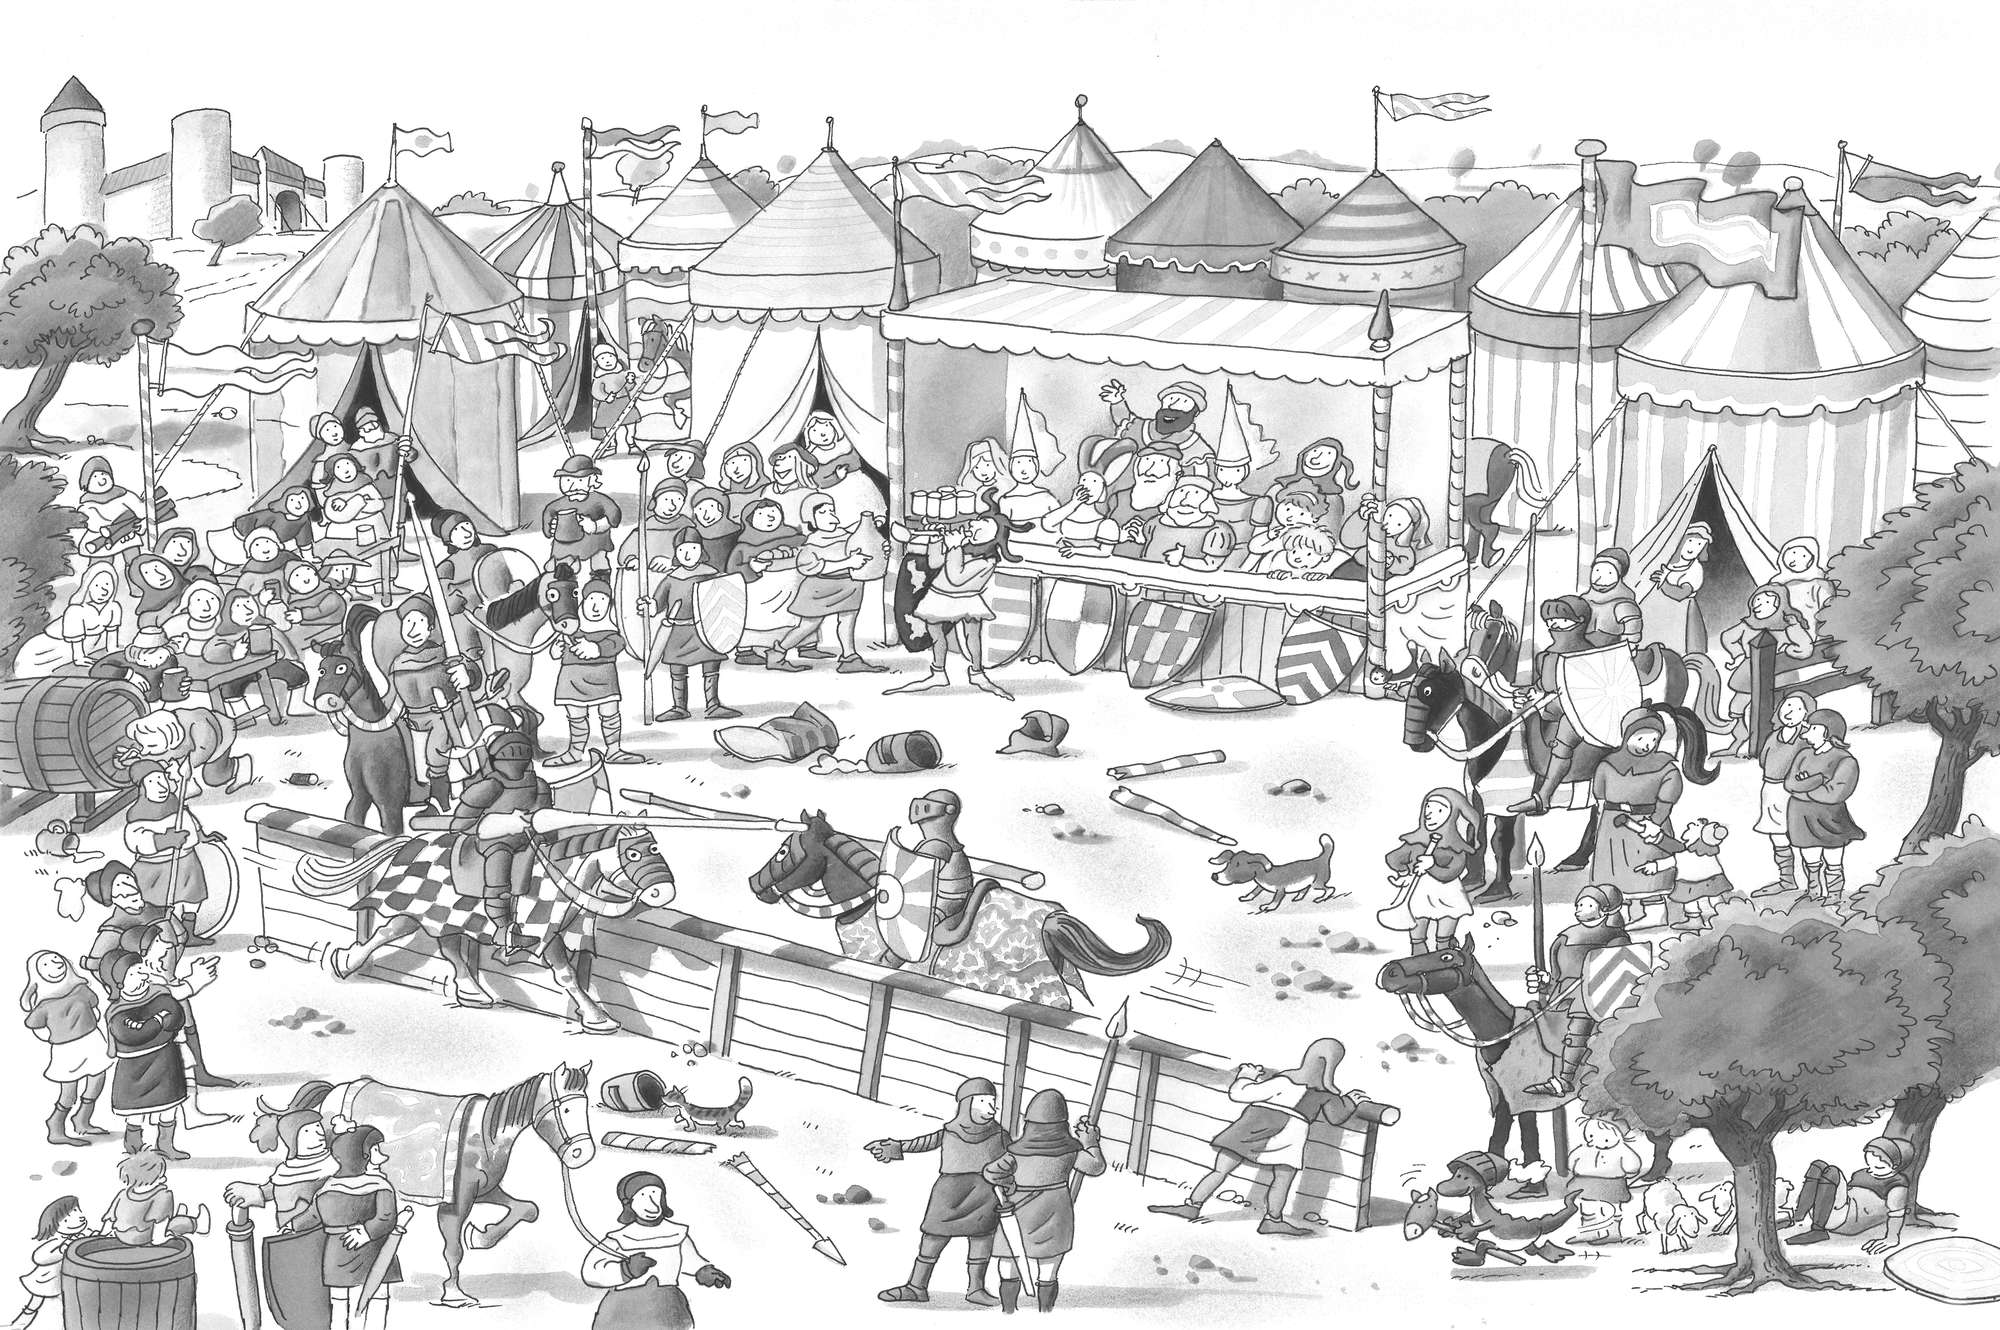             Papier peint panoramique enfants fête des chevaliers avec festival noir blanc sur intissé structuré
        